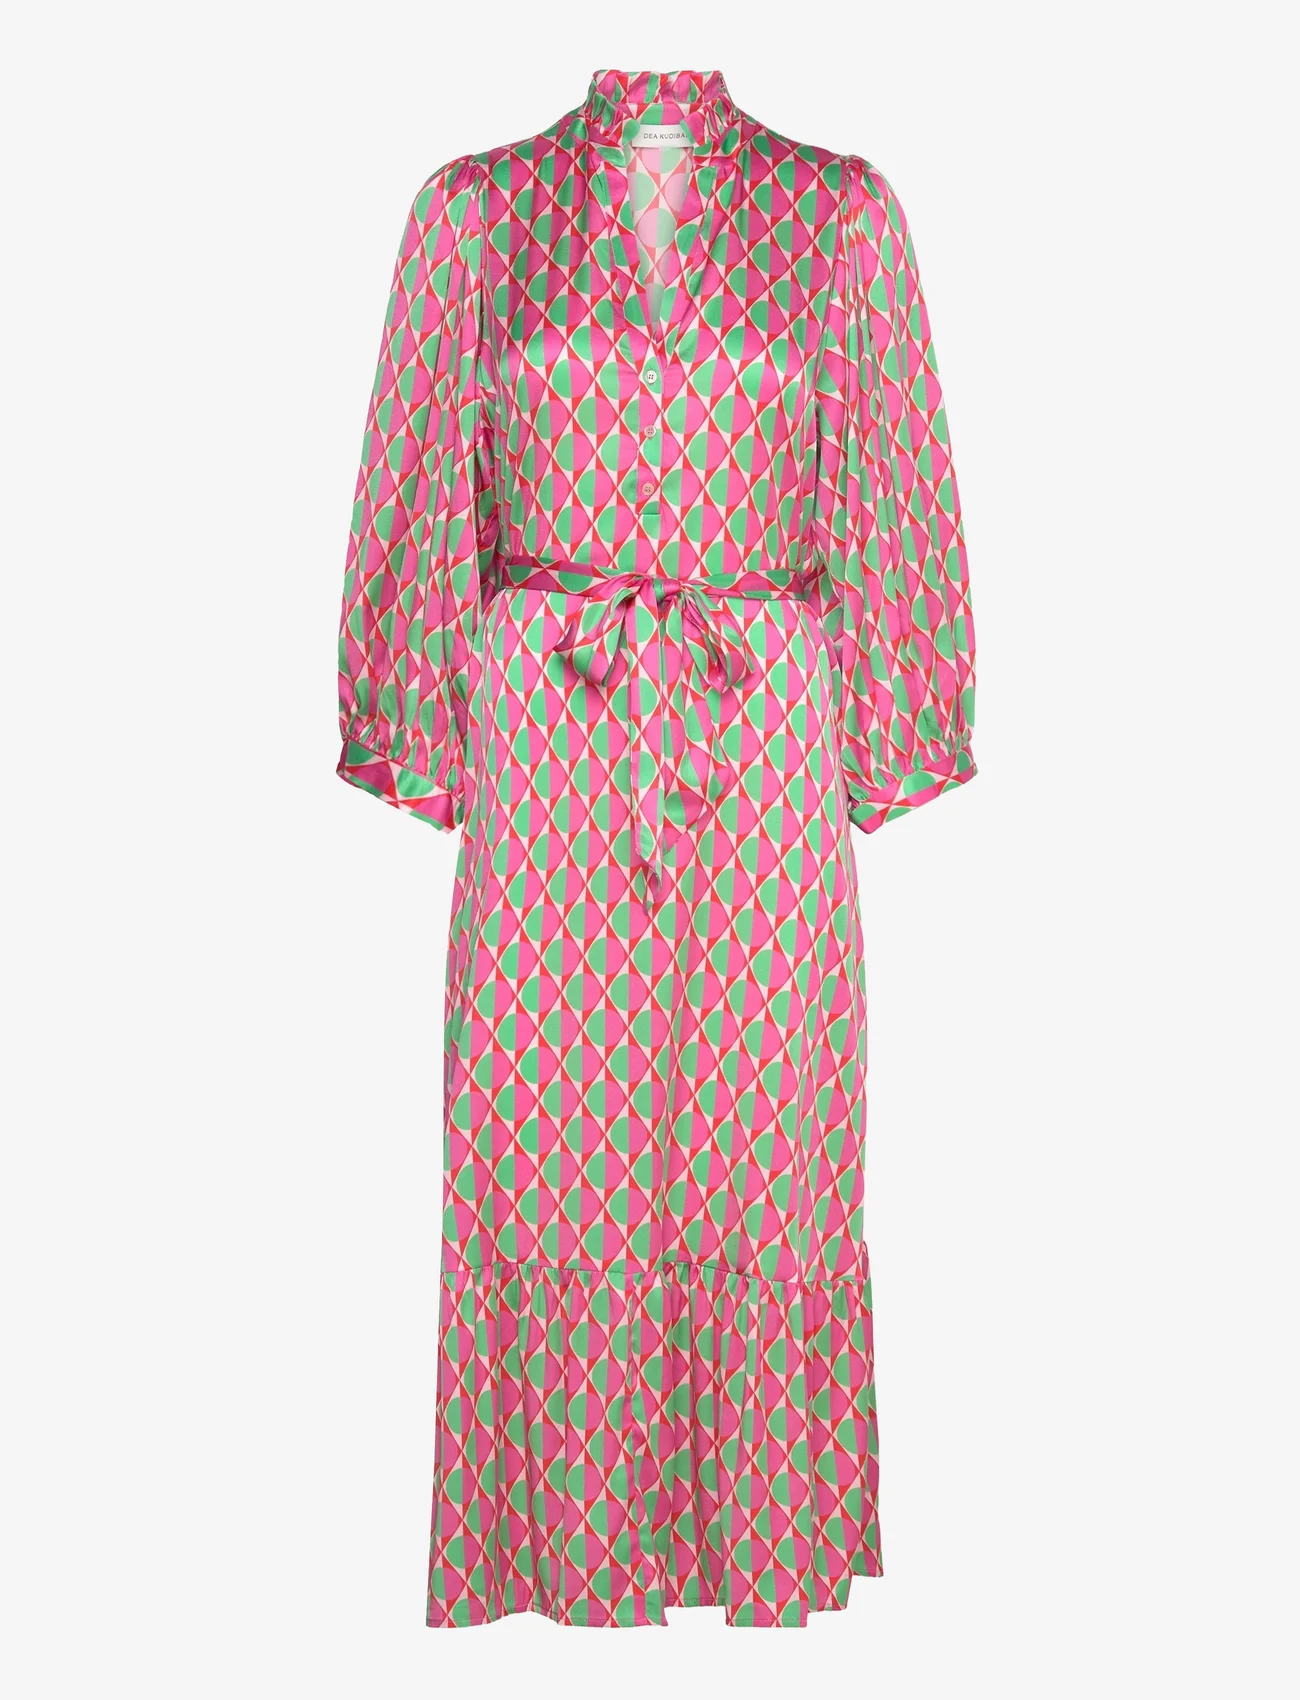 Dea Kudibal - ABELONE - marškinių tipo suknelės - avignon chili - 0